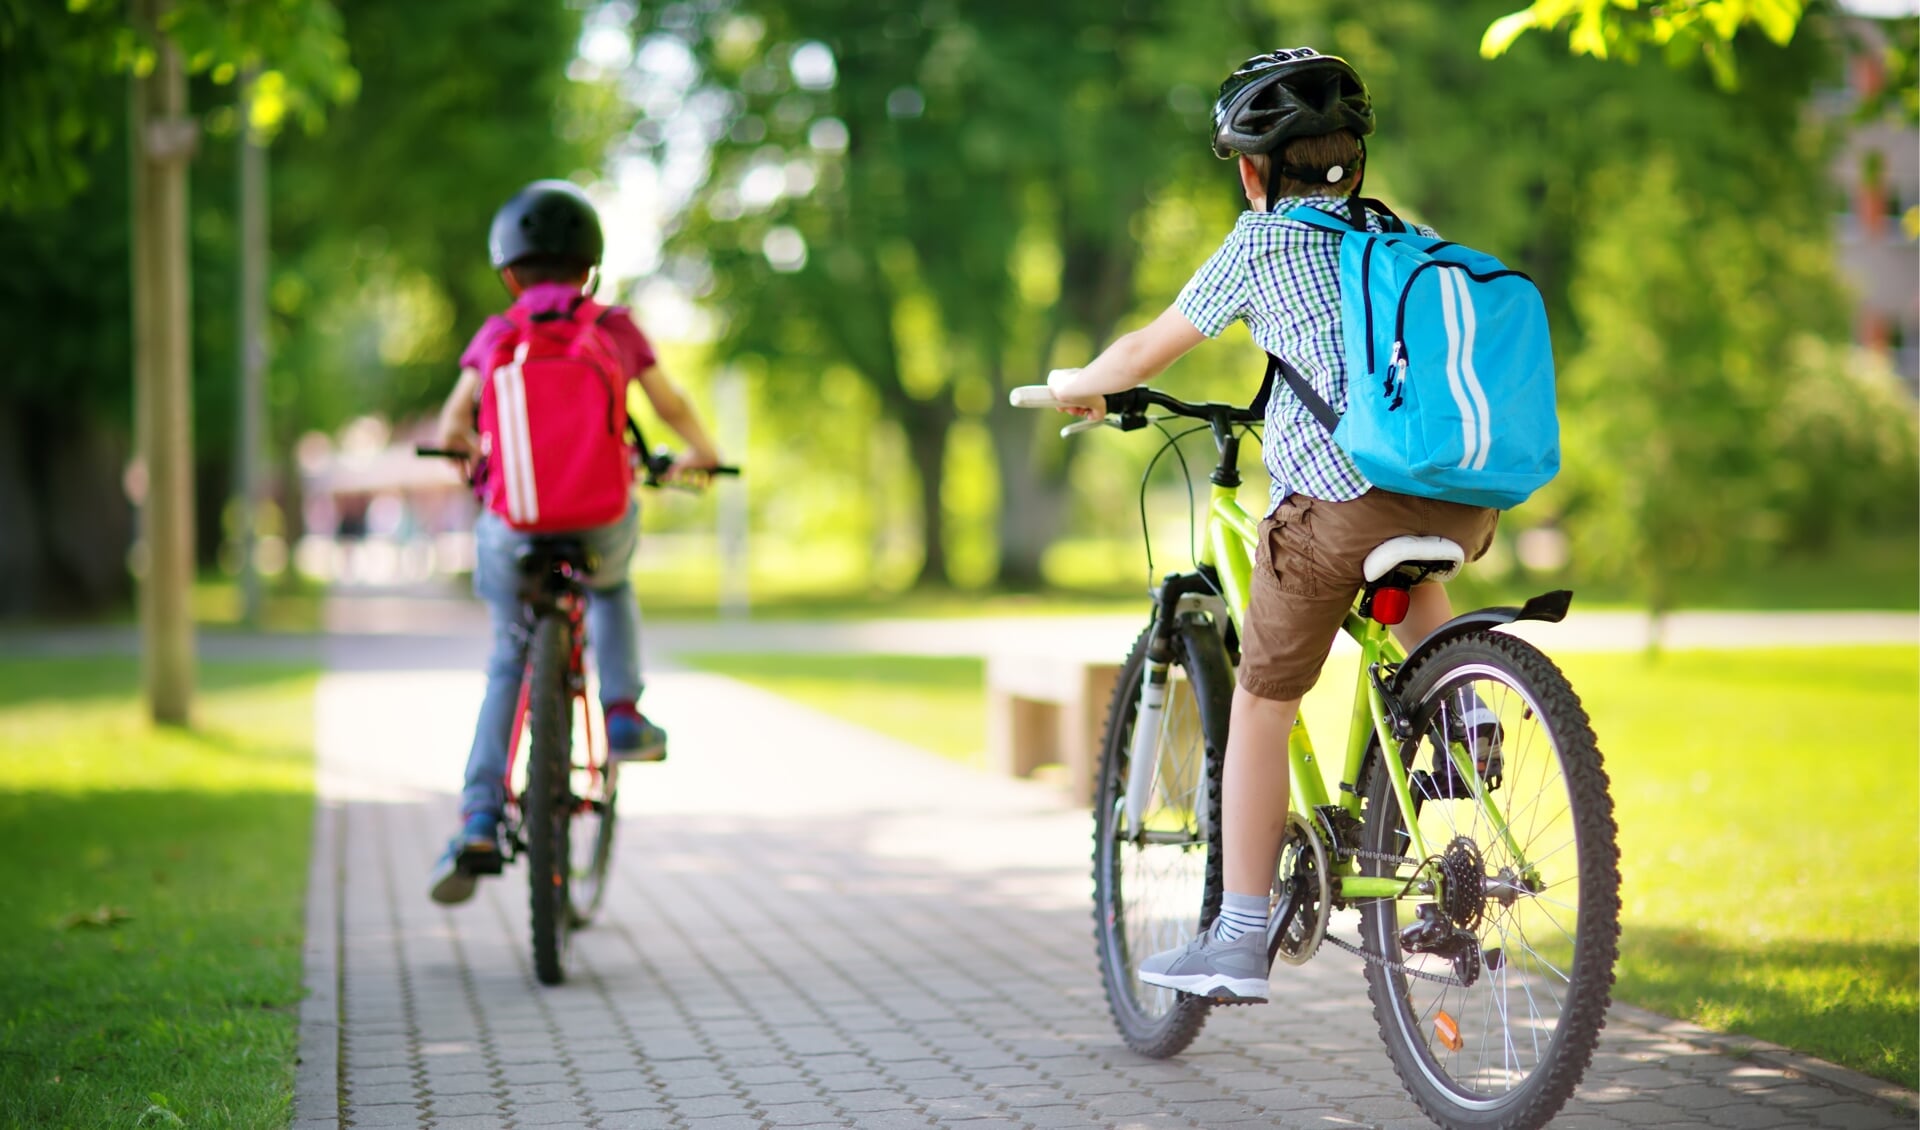 De fietsvaardigheid van kinderen staat al jaren onder druk. Volgens de ANWB onder meer doordat ouders kinderen vaker met de auto of bakfiets naar school brengen.